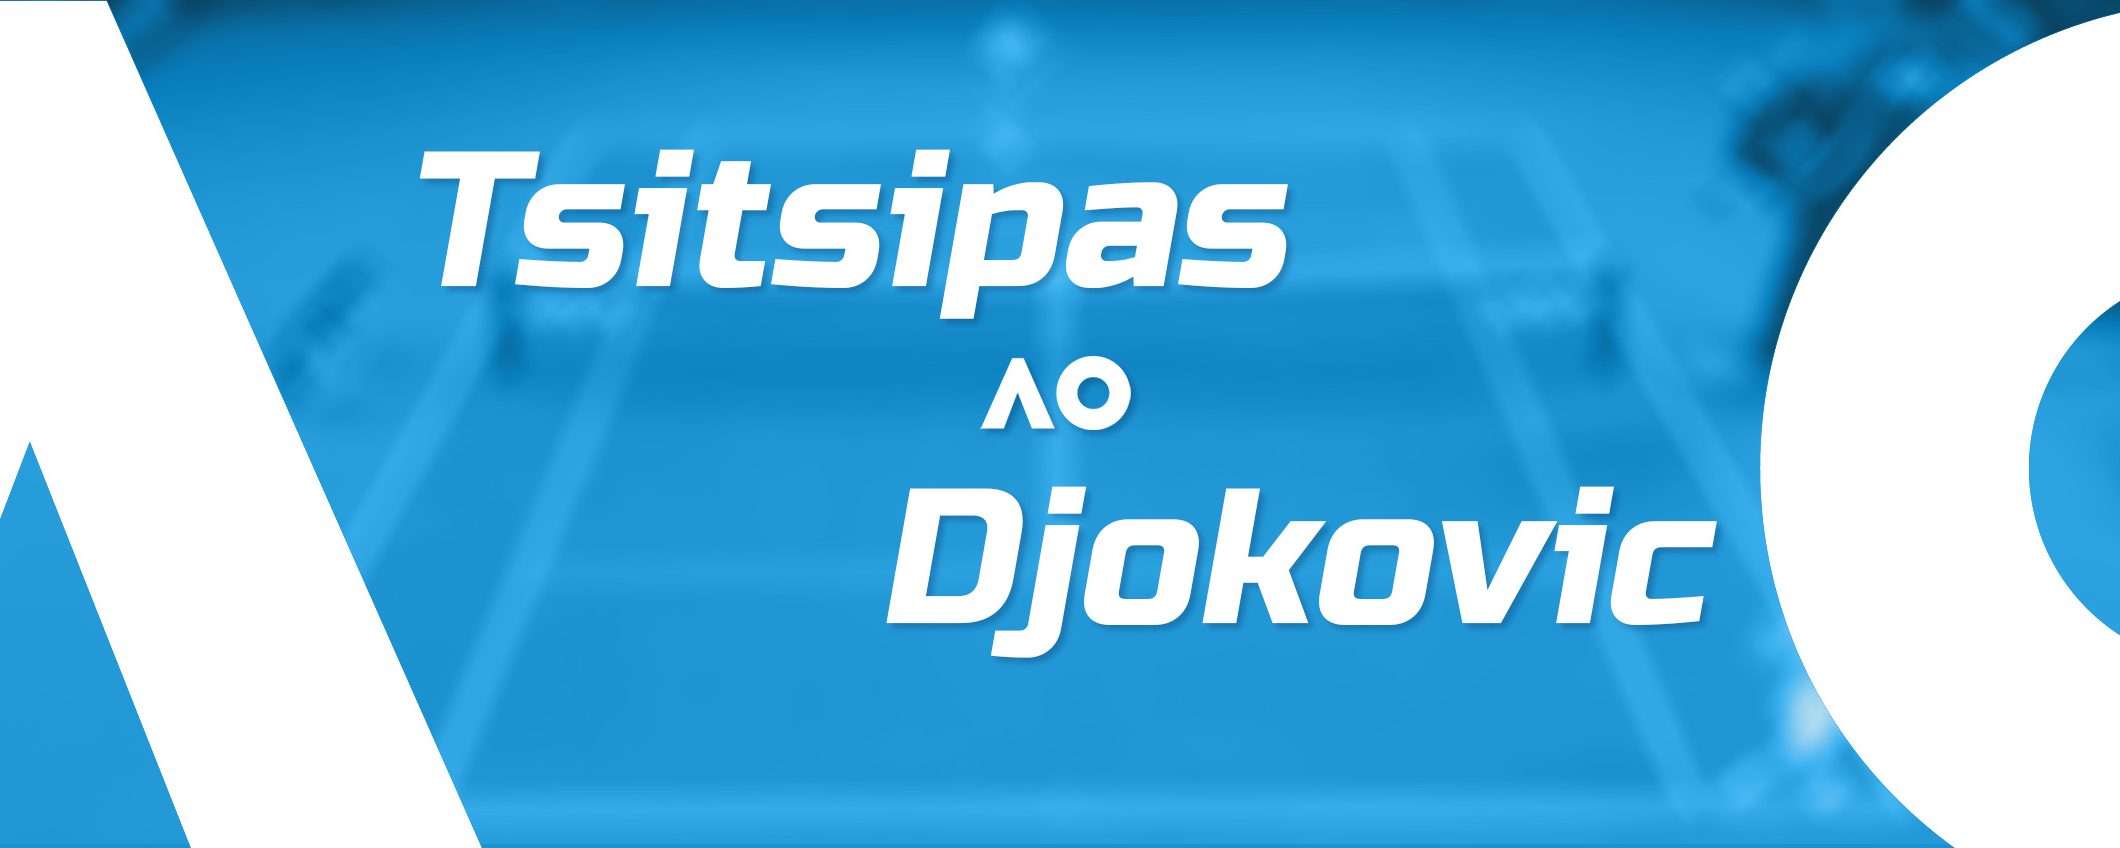 Tsitsipas-Djokovic: finale Australian Open in streaming